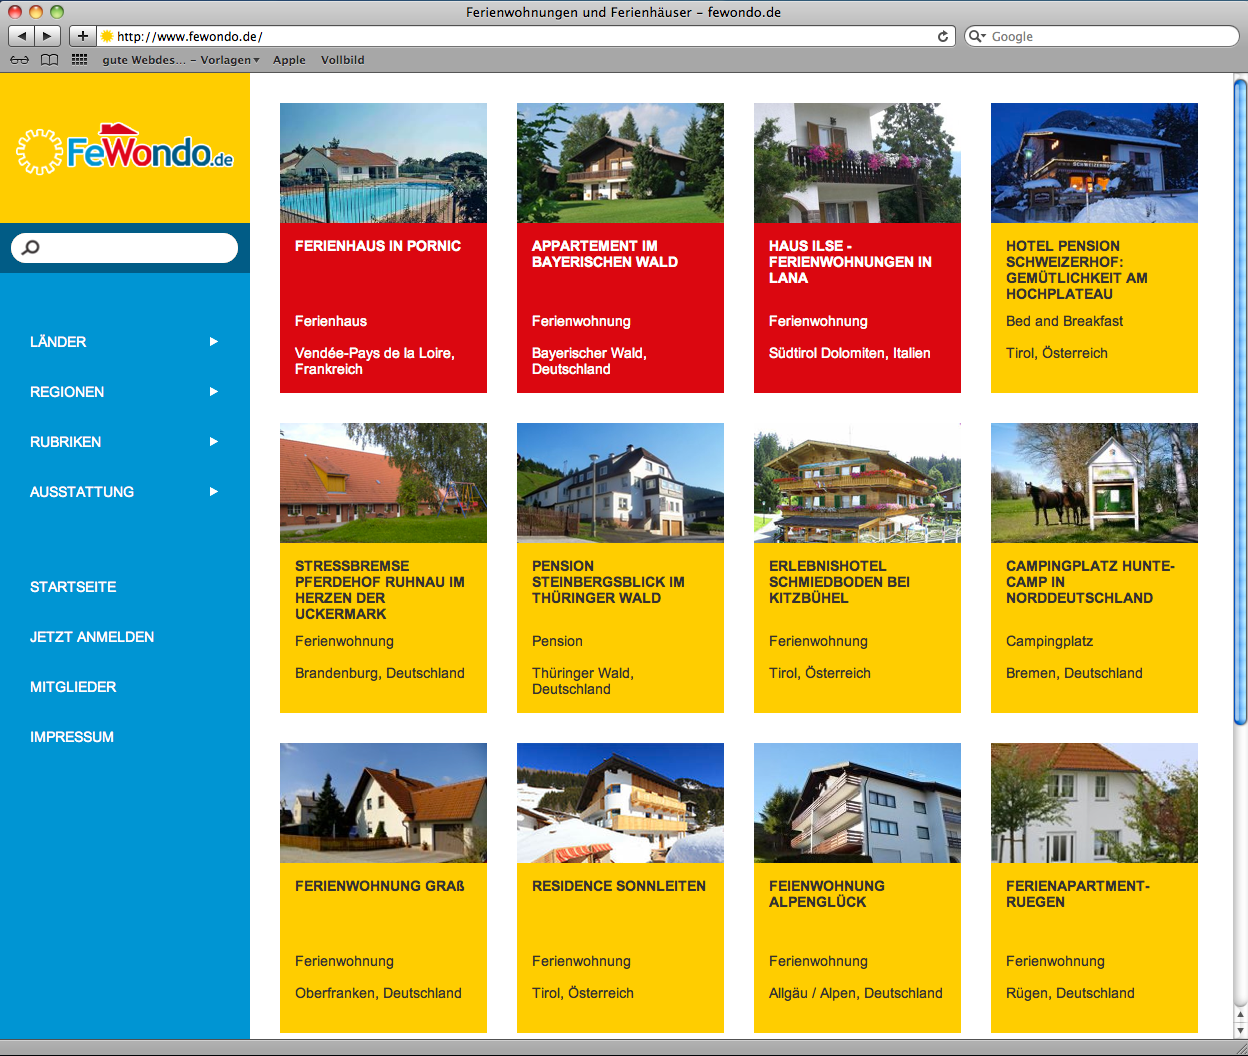 FeWondo.de - neues Portal für Ferienwohnungen und Ferienhäuser offiziell gestartet